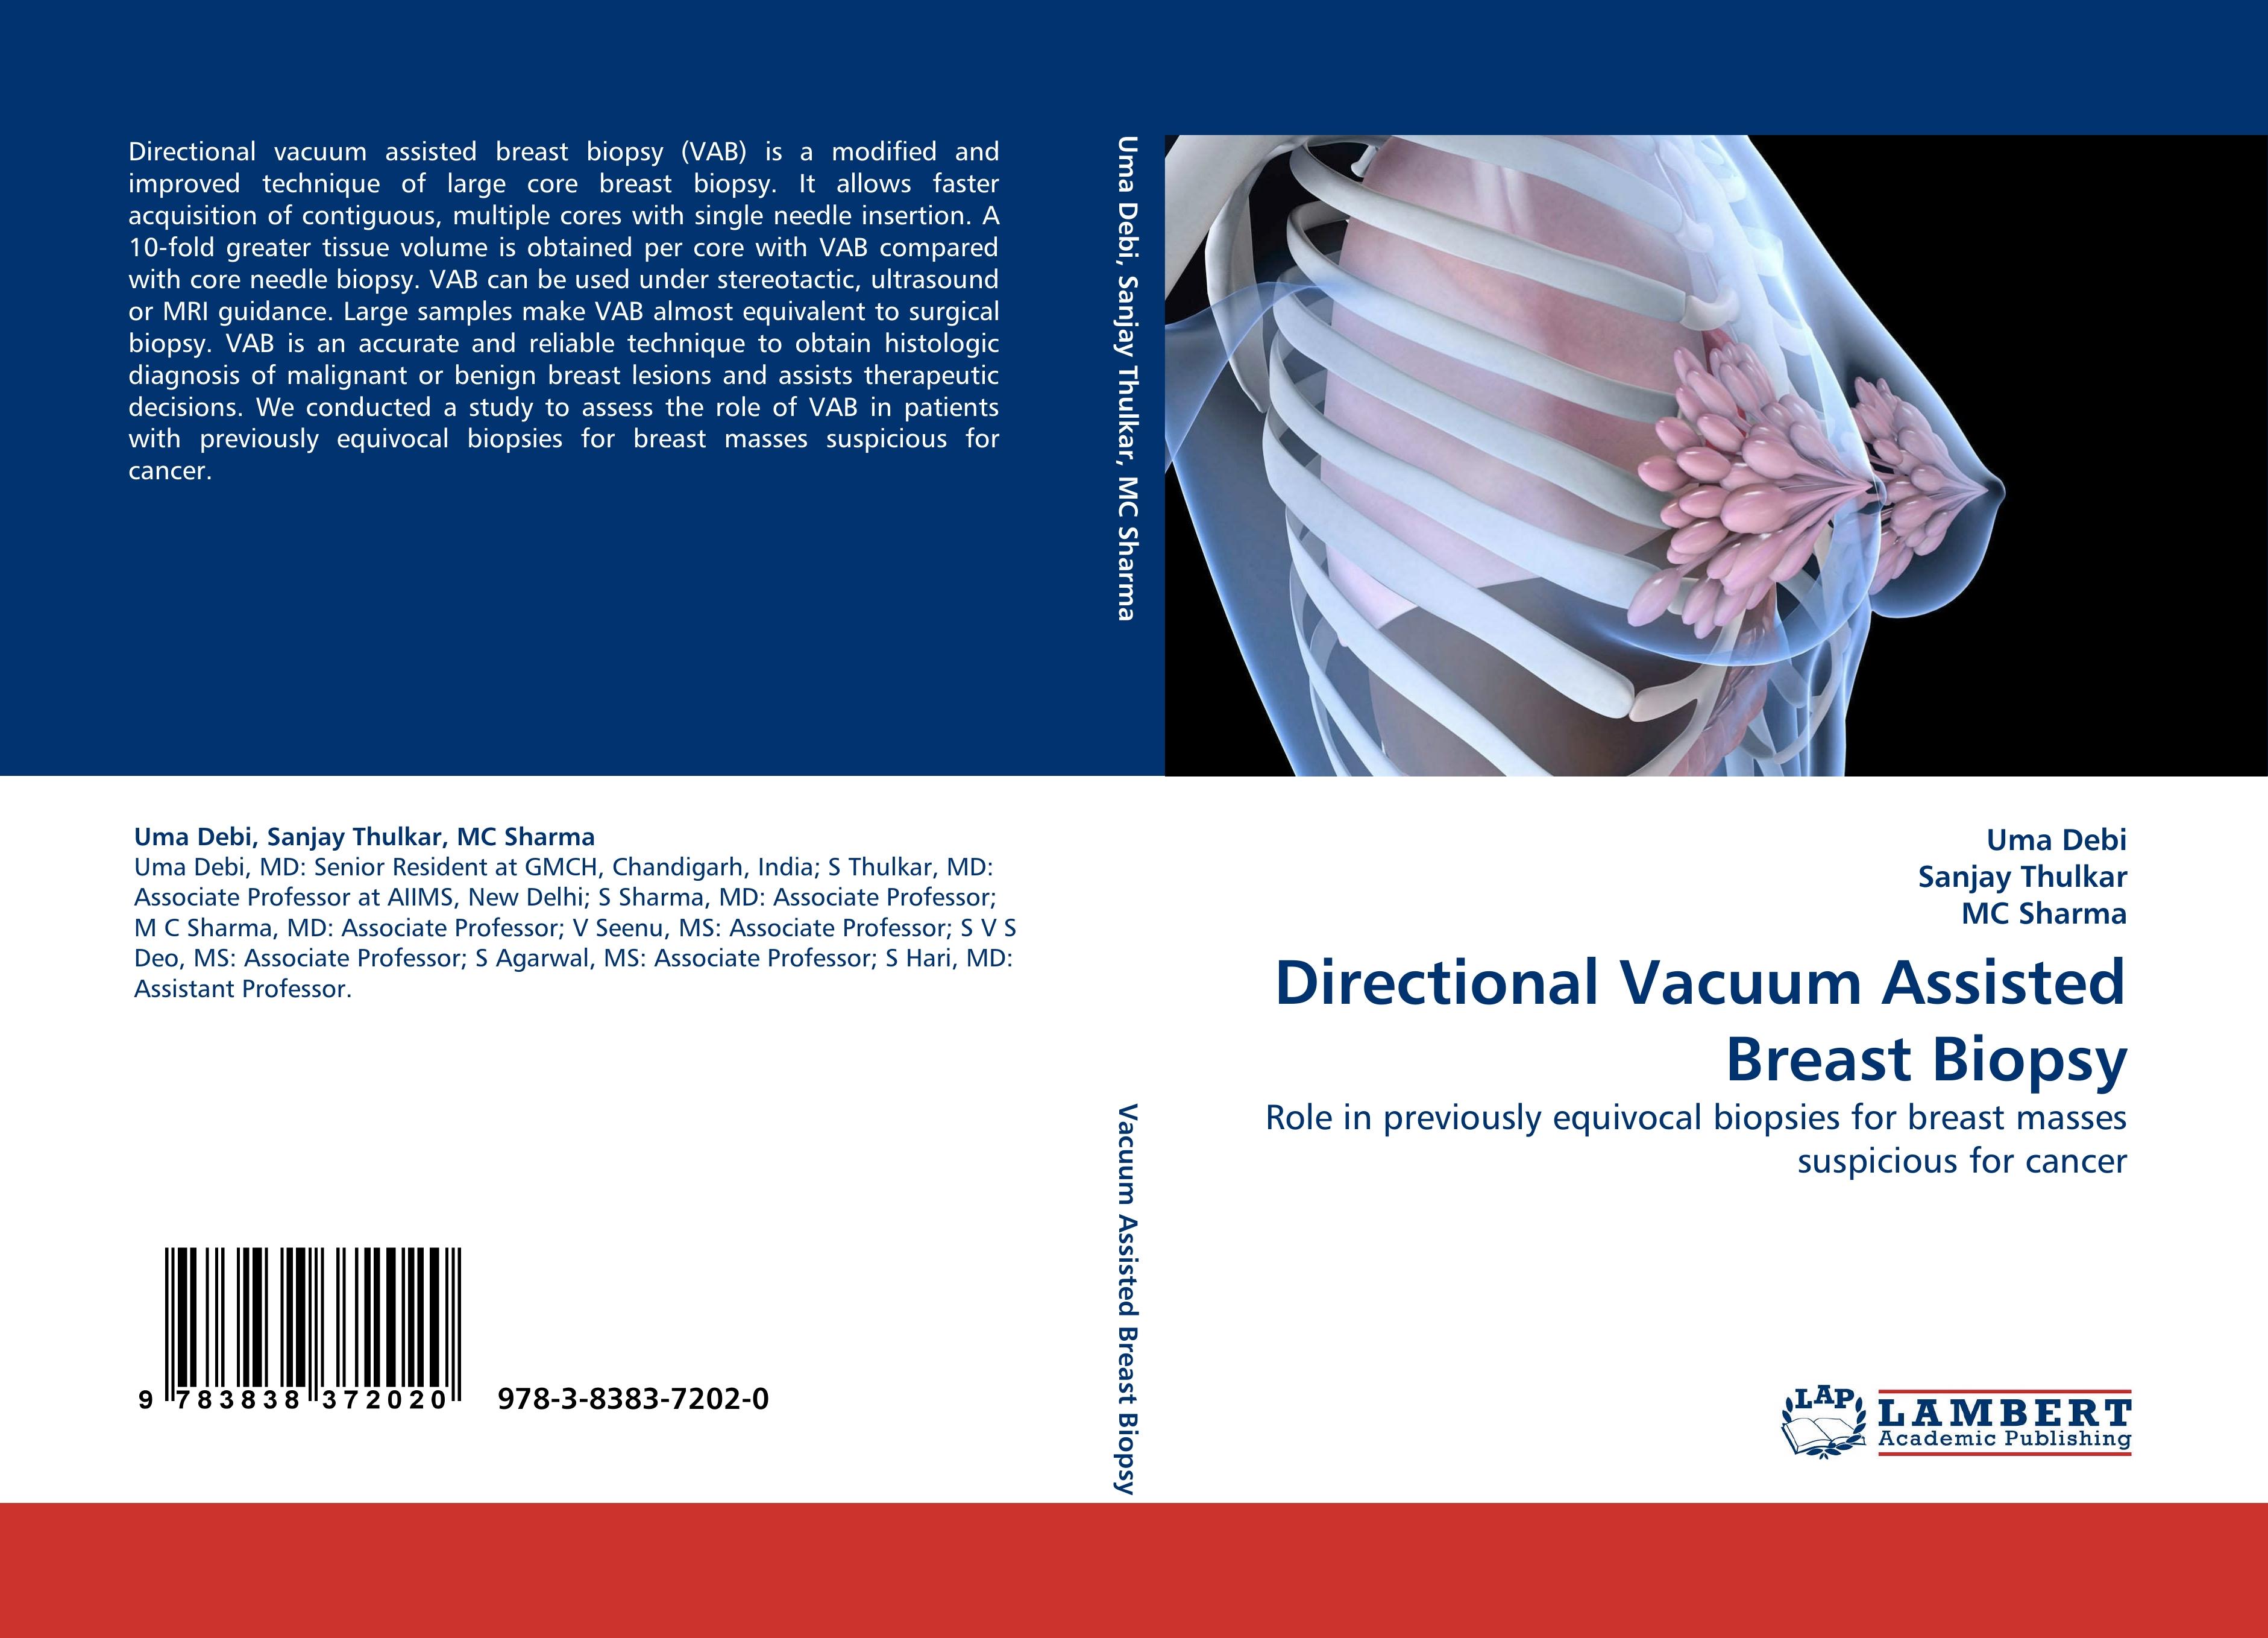 Directional Vacuum Assisted Breast Biopsy - Uma Debi Sanjay Thulkar MC Sharma